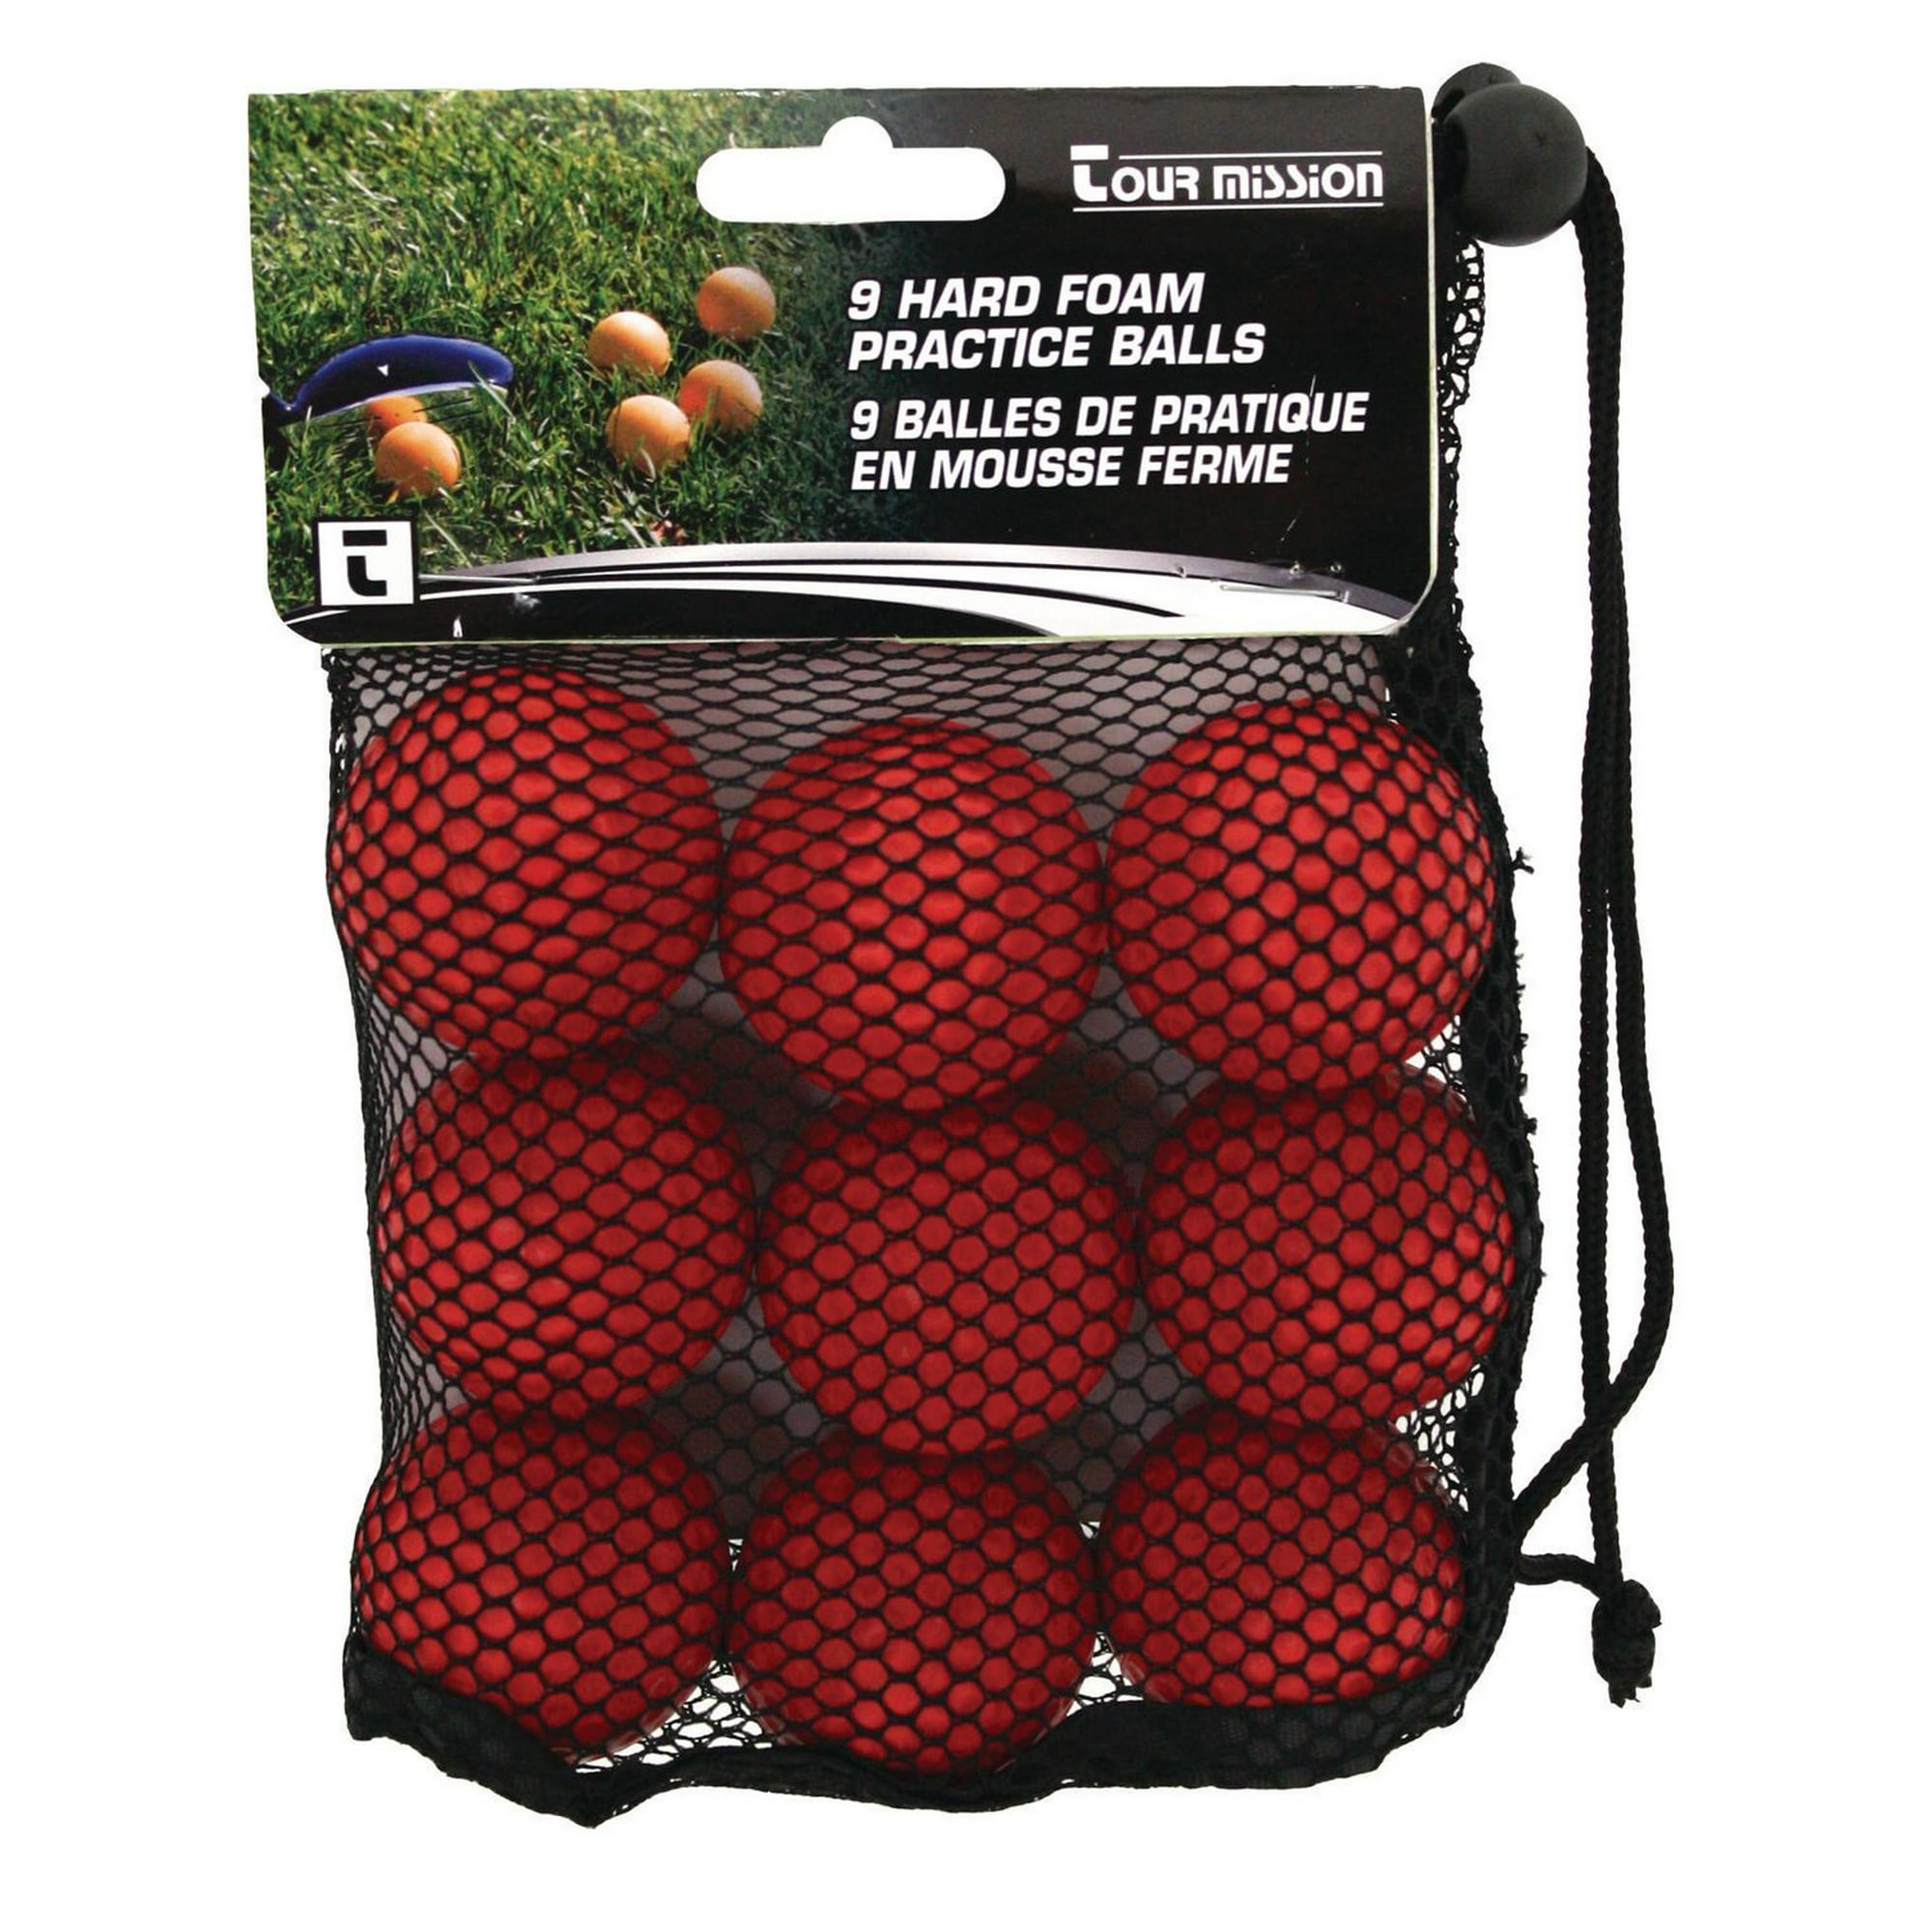 Pido Yoga Mat, Golf Equipment: Clubs, Balls, Bags